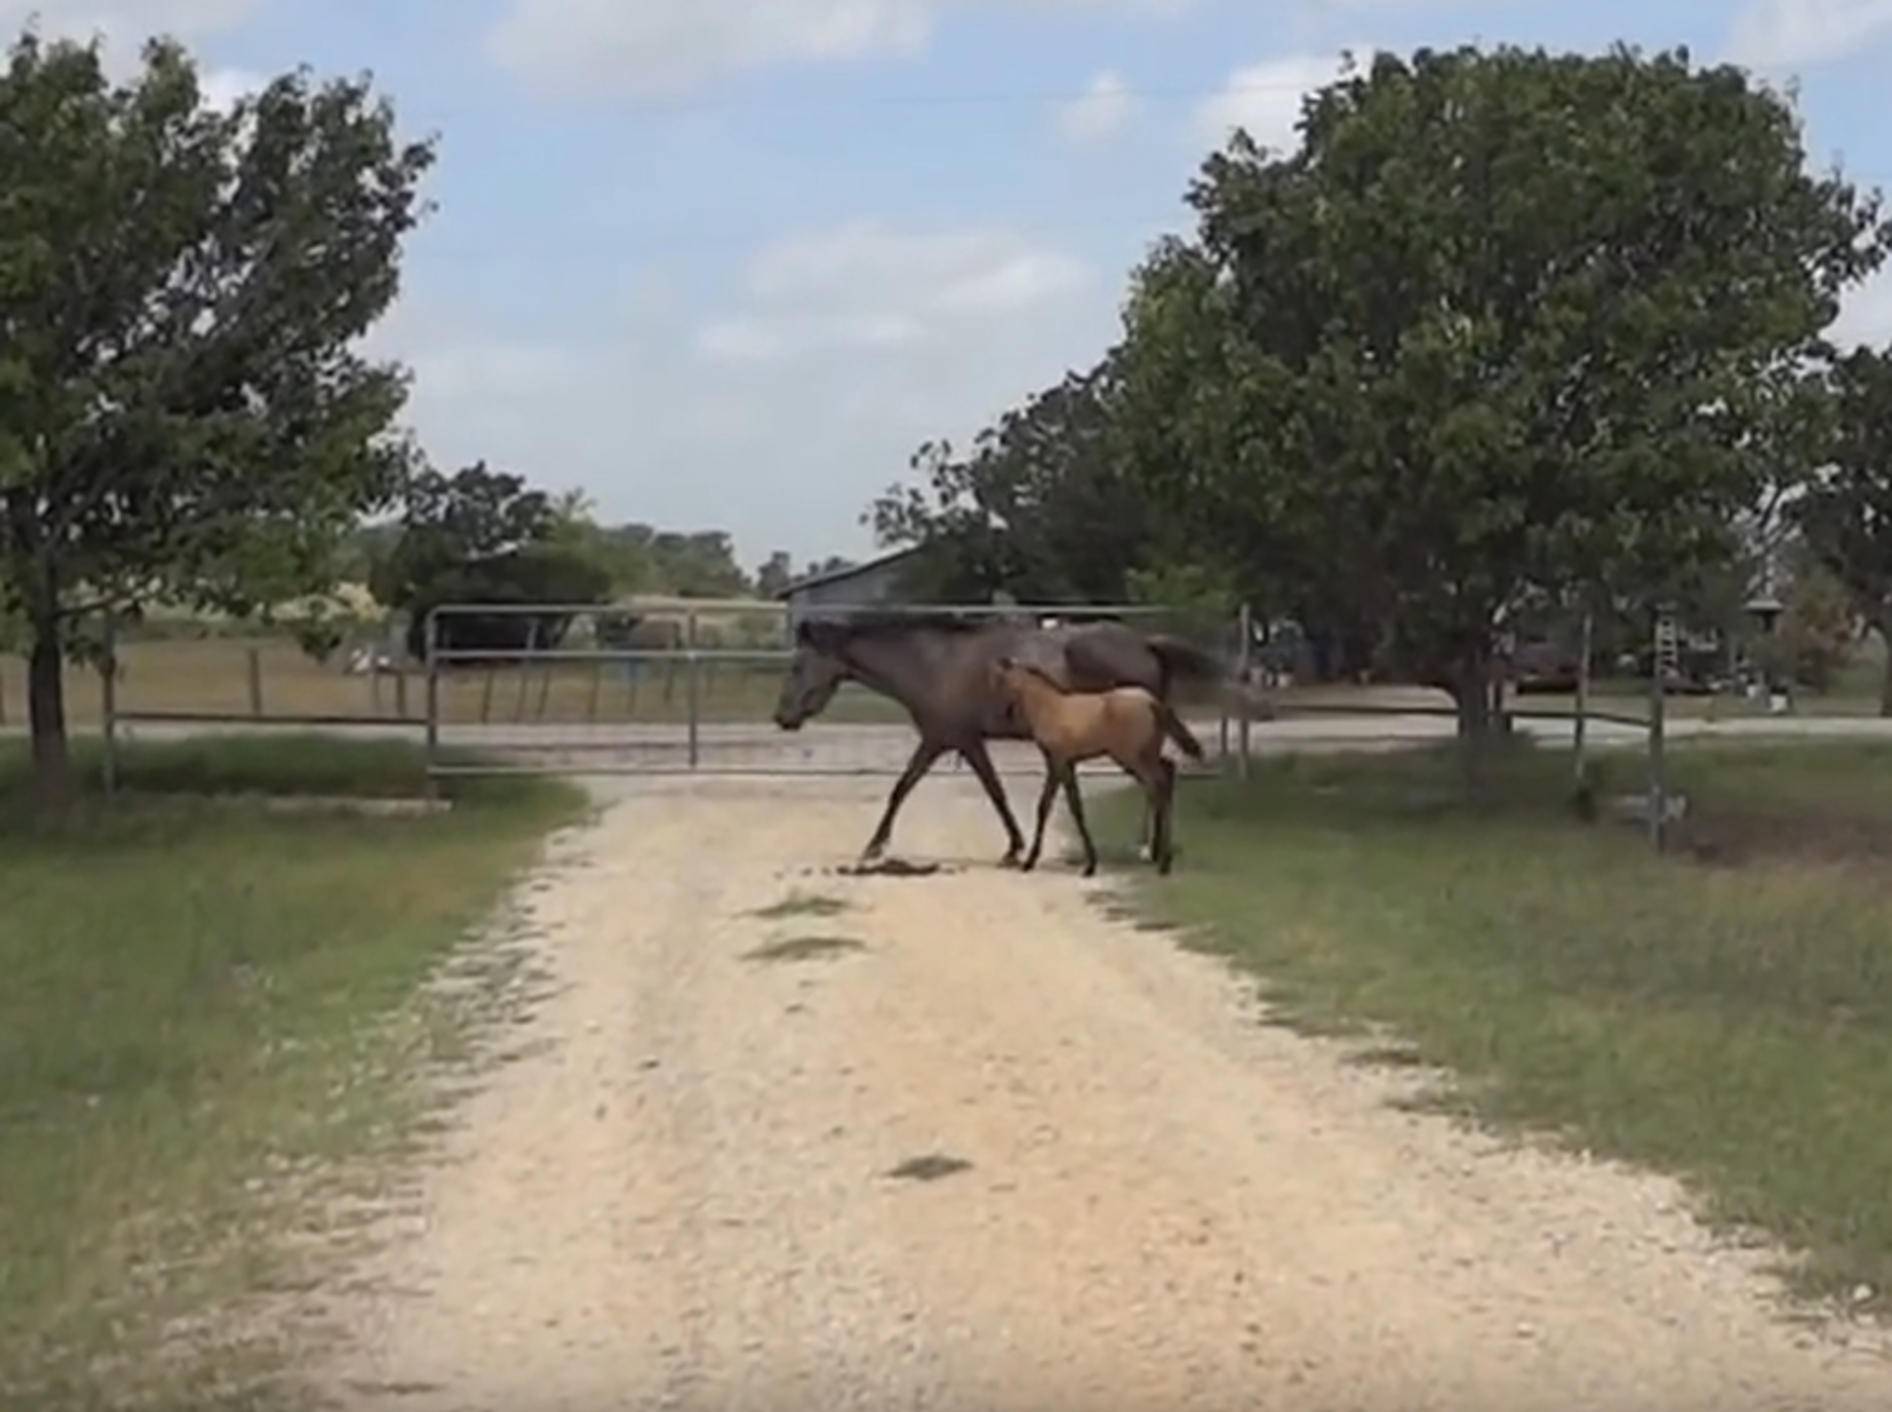 Pferdemama bringt ihrem Fohlen das Springen bei – YouTube / k9element